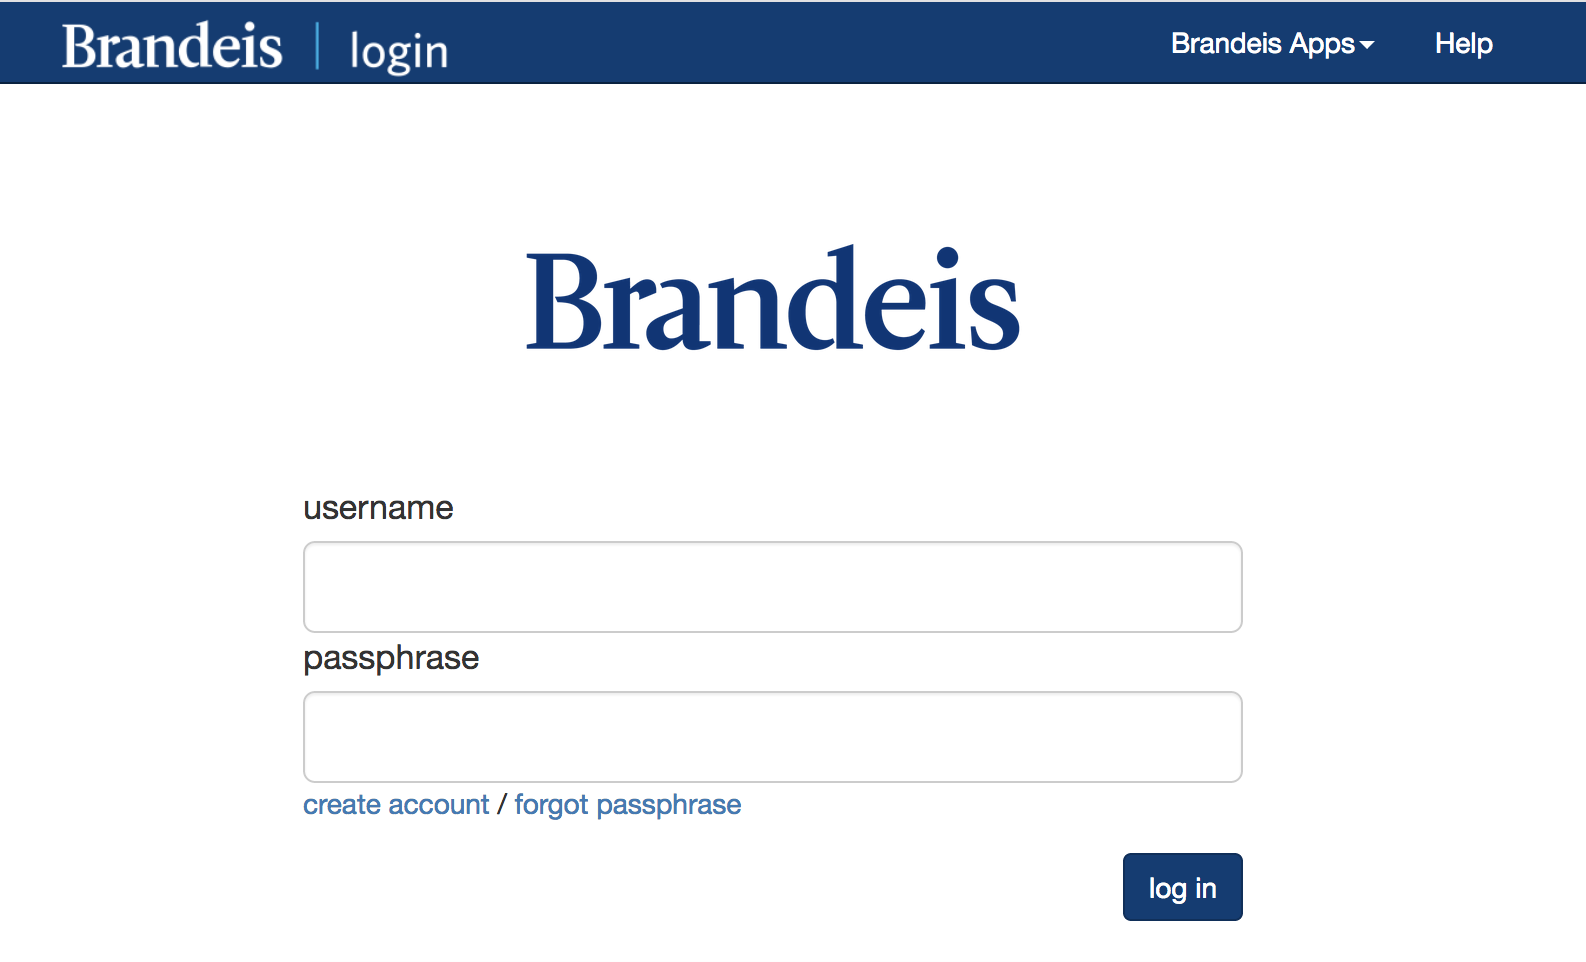 Brandeis login screen